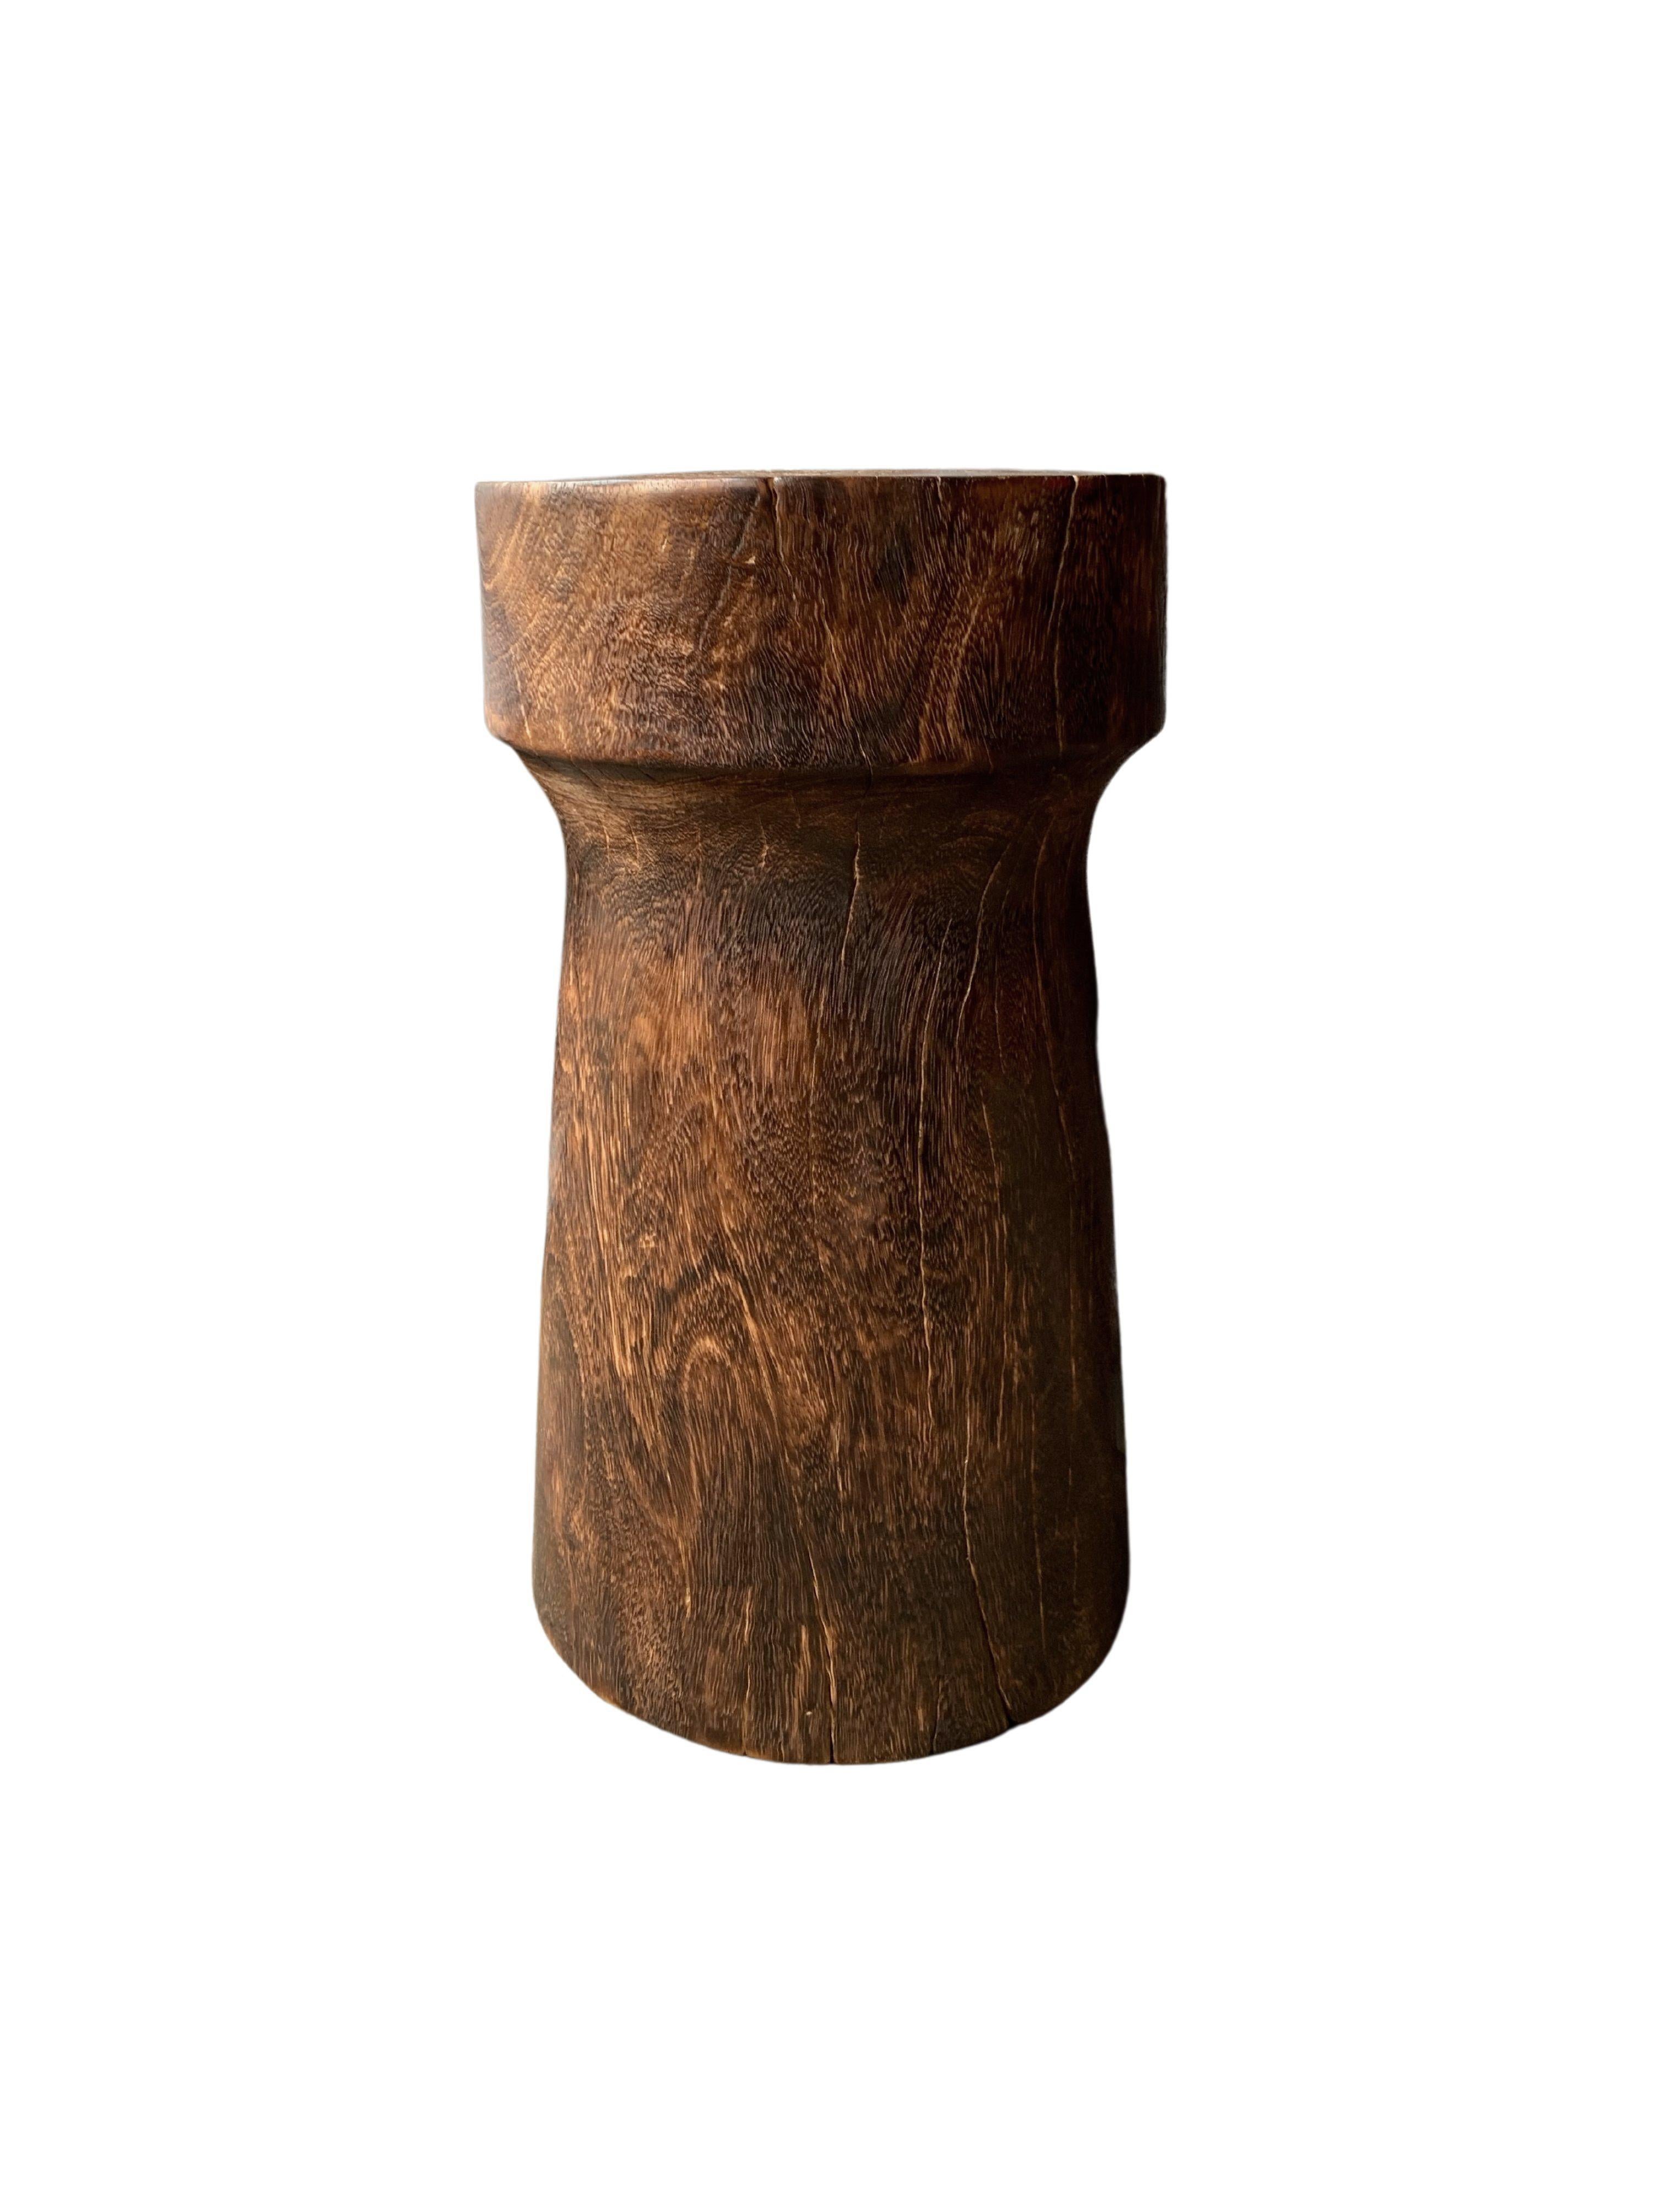 Une table d'appoint merveilleusement sculpturale. Son pigment neutre et sa subtile texture de bois en font un produit parfait pour tout espace. Une pièce unique, sculpturale et polyvalente. Cette table a été fabriquée en bois de manguier.

